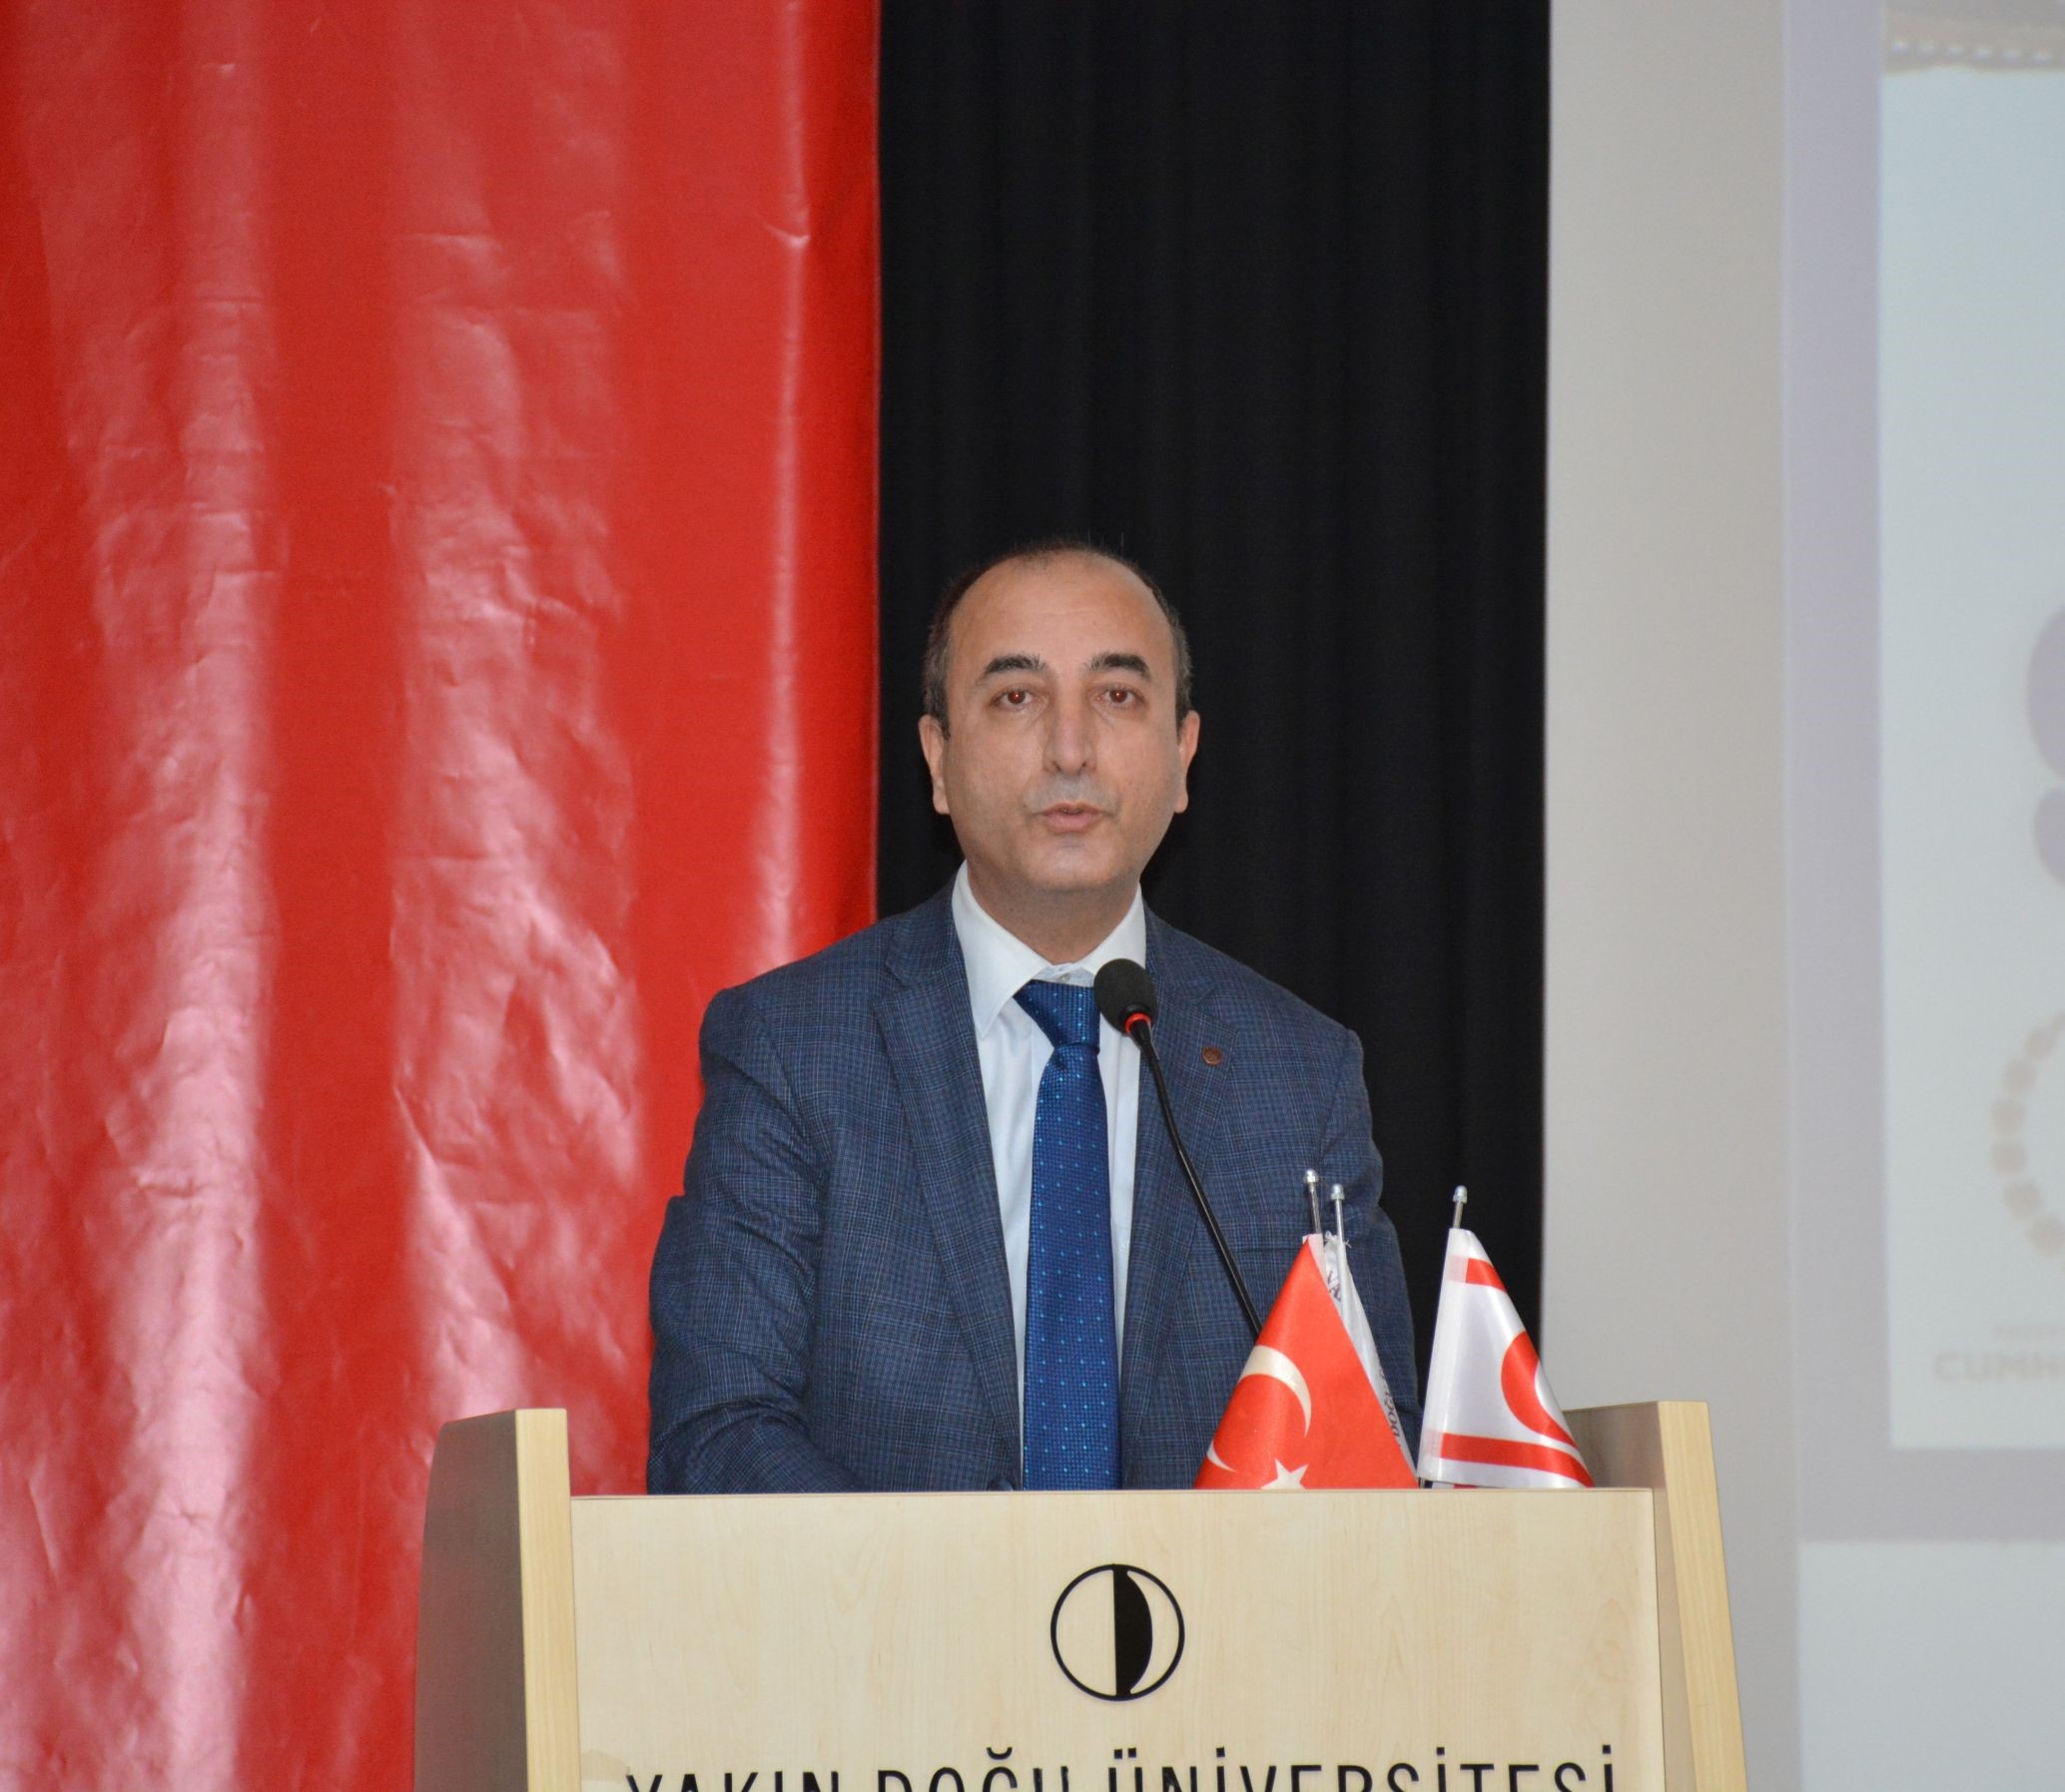 Türkiye Engelsiz Bilişim Platformu Koordinatörü ve Manisa Celal Bayar Üniversitesi Öğretim Üyesi  Dr. Mustafa Özhan KALAÇ'ın konuşması